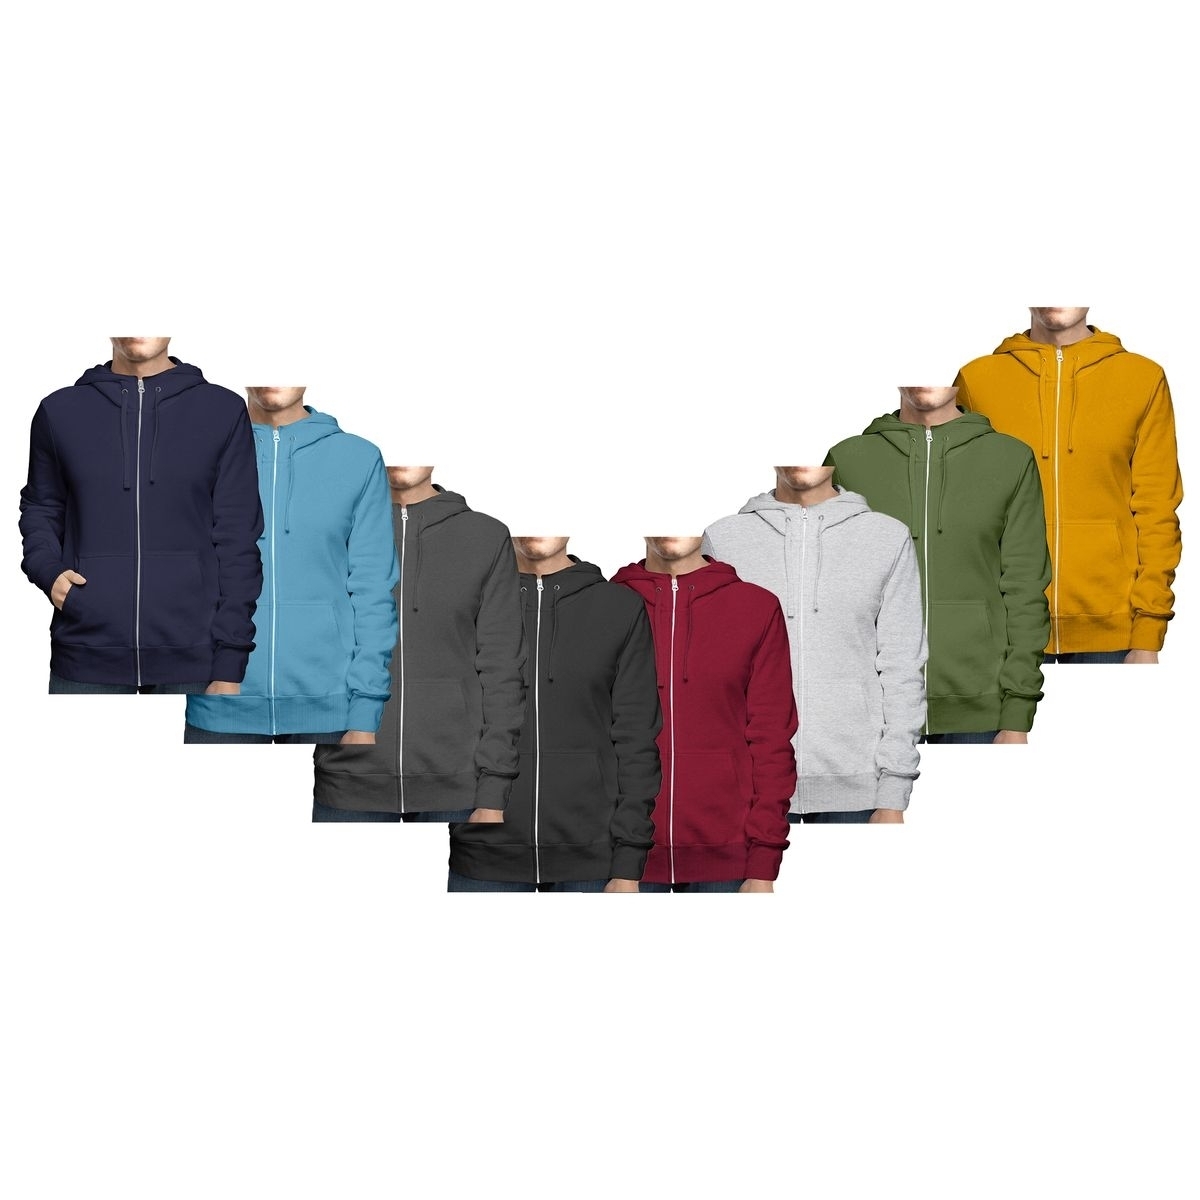 Men's Winter Warm Cozy Full Zip-Up Fleece Lined Soft Hoodie Sweatshirt - Grey, Large